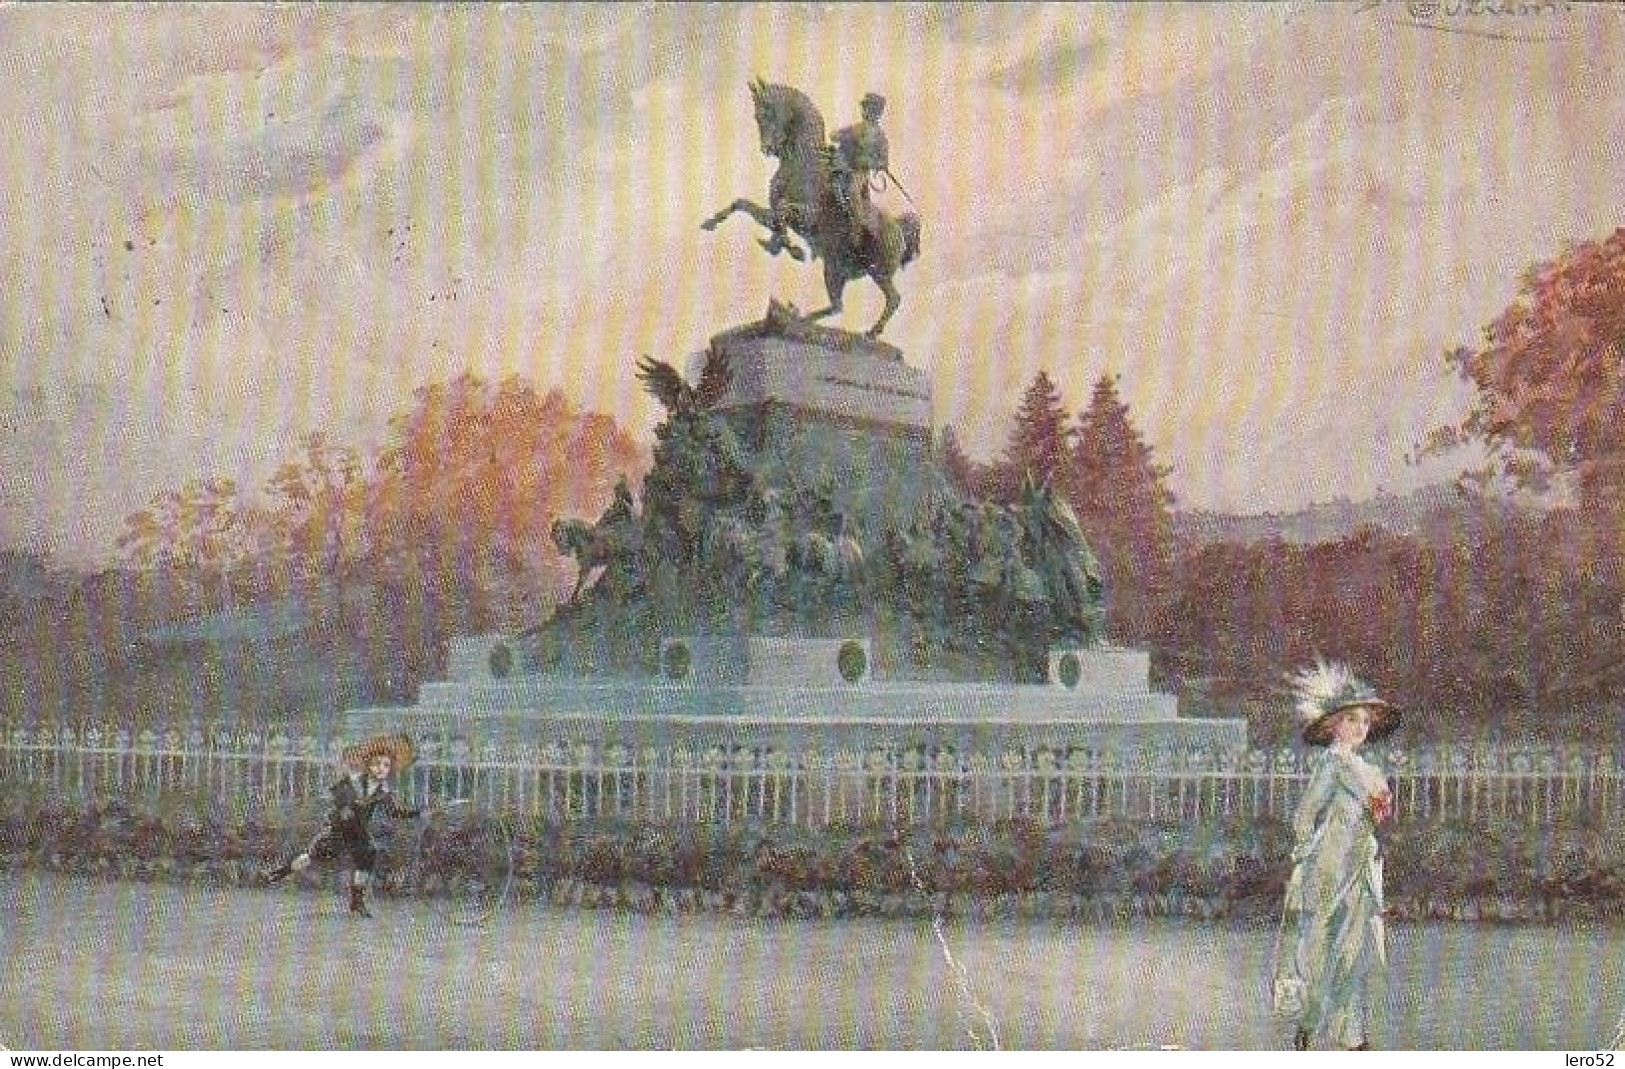 TORINO D'EPOCA MONUMENTO AL PRINCIPE AMEDEO DI SAVOIA ANNO 1918 VIAGGIATA FTO PIC - Other Monuments & Buildings